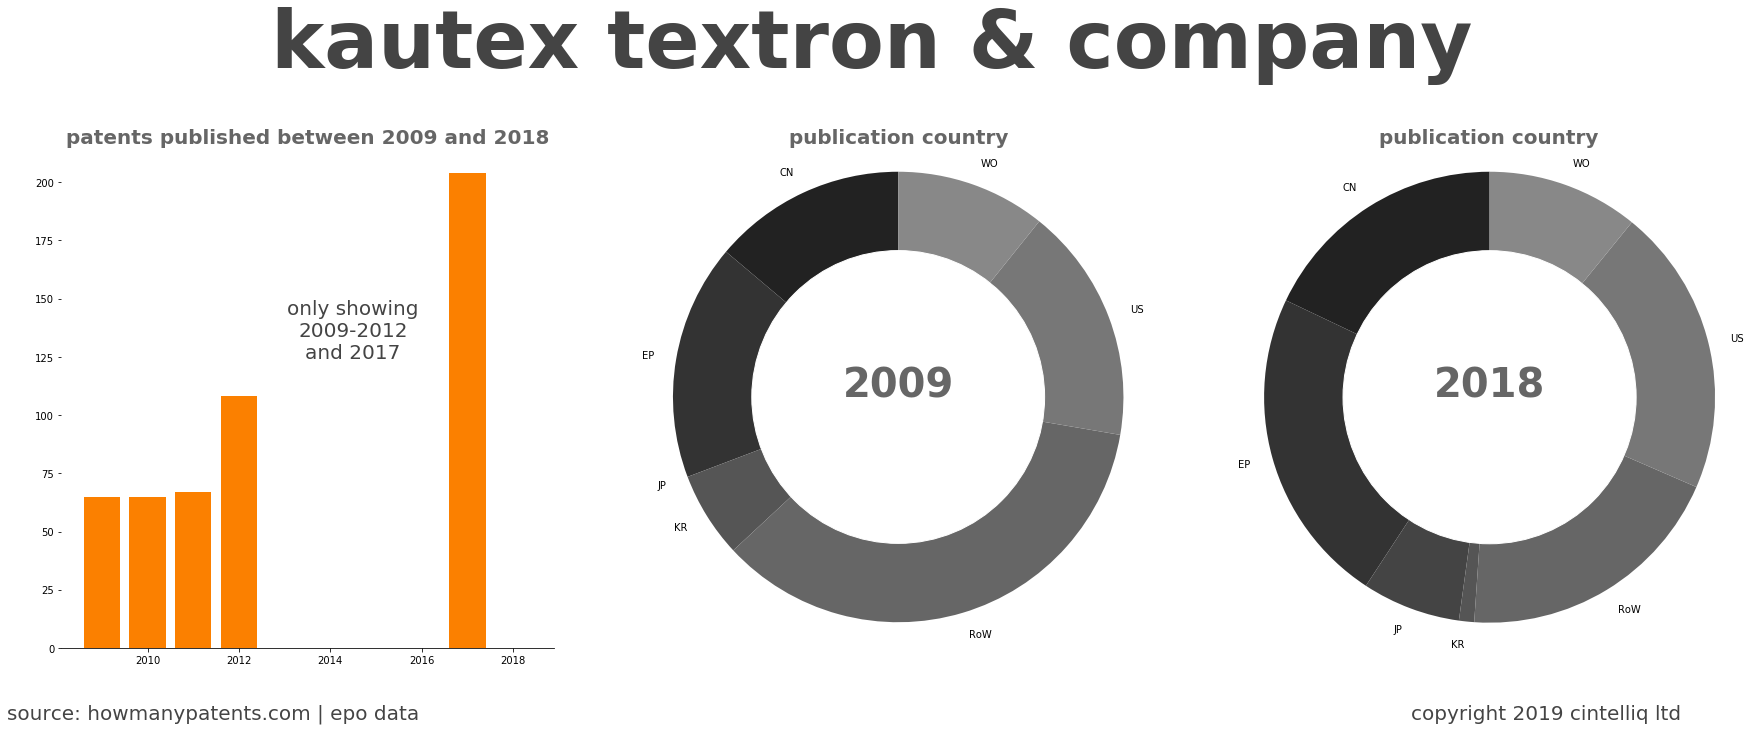 summary of patents for Kautex Textron & Company